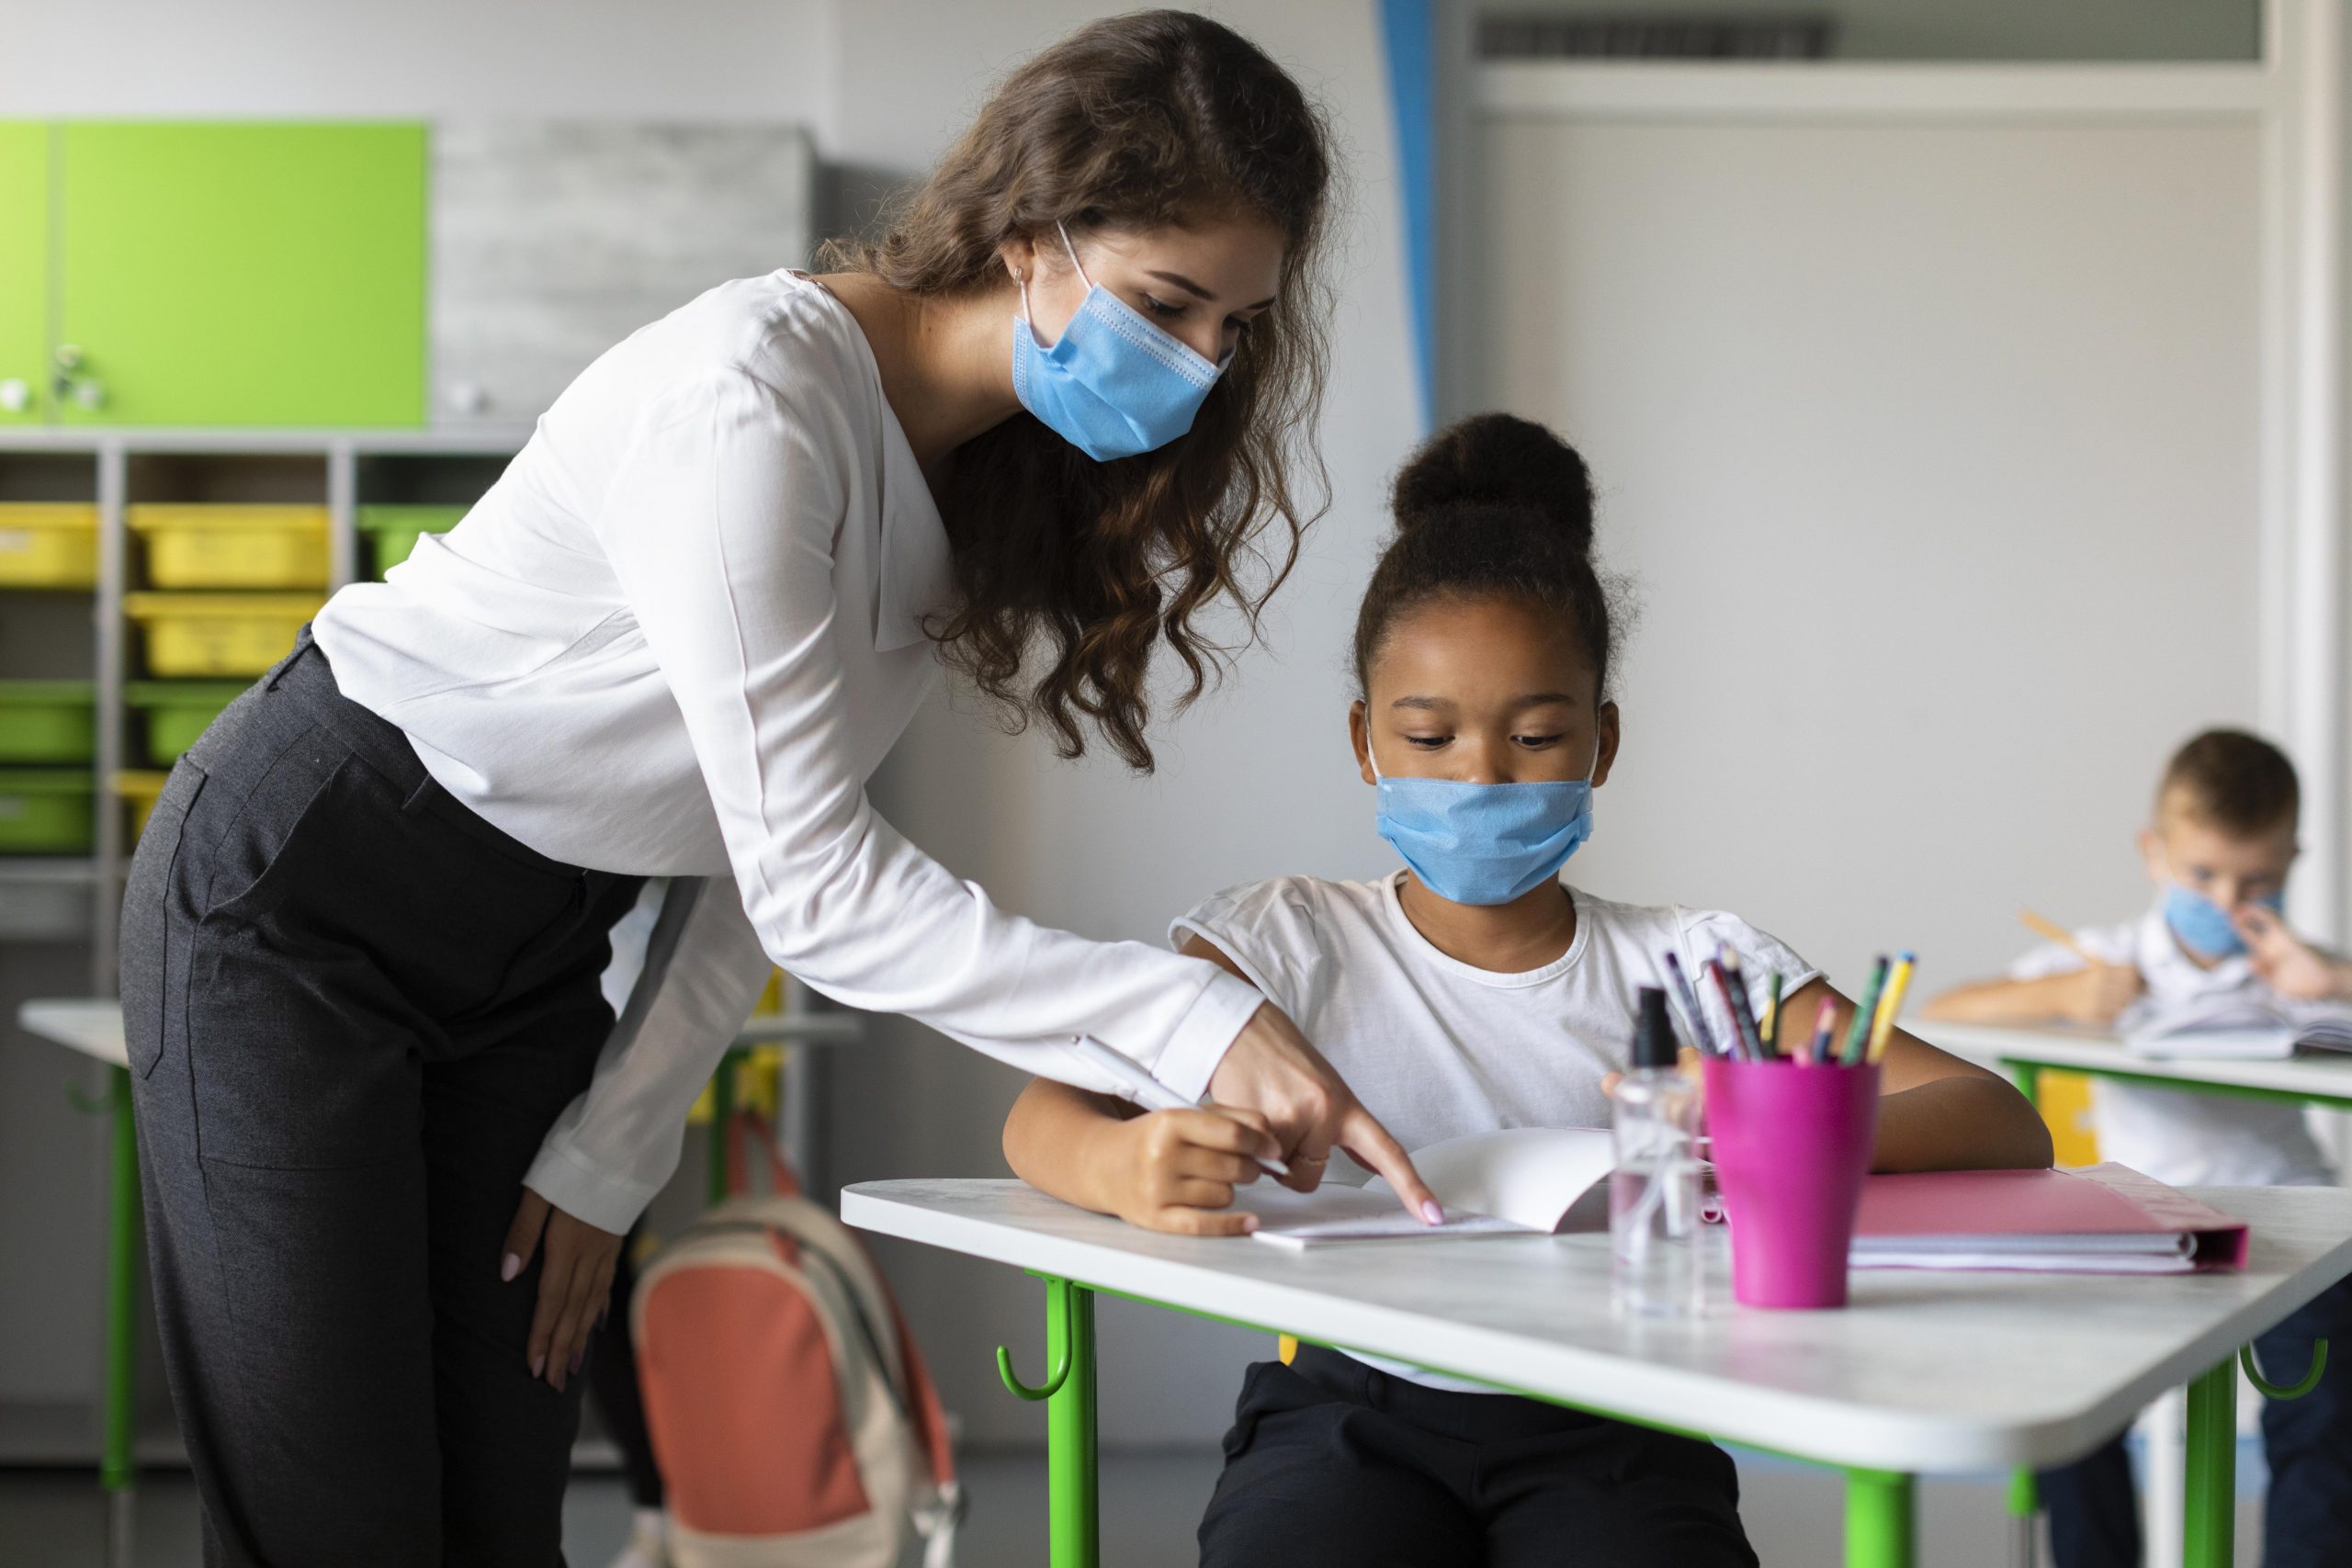 Escolas precisam se adaptar após estresse causado em alunos pela pandemia Foto Freepik